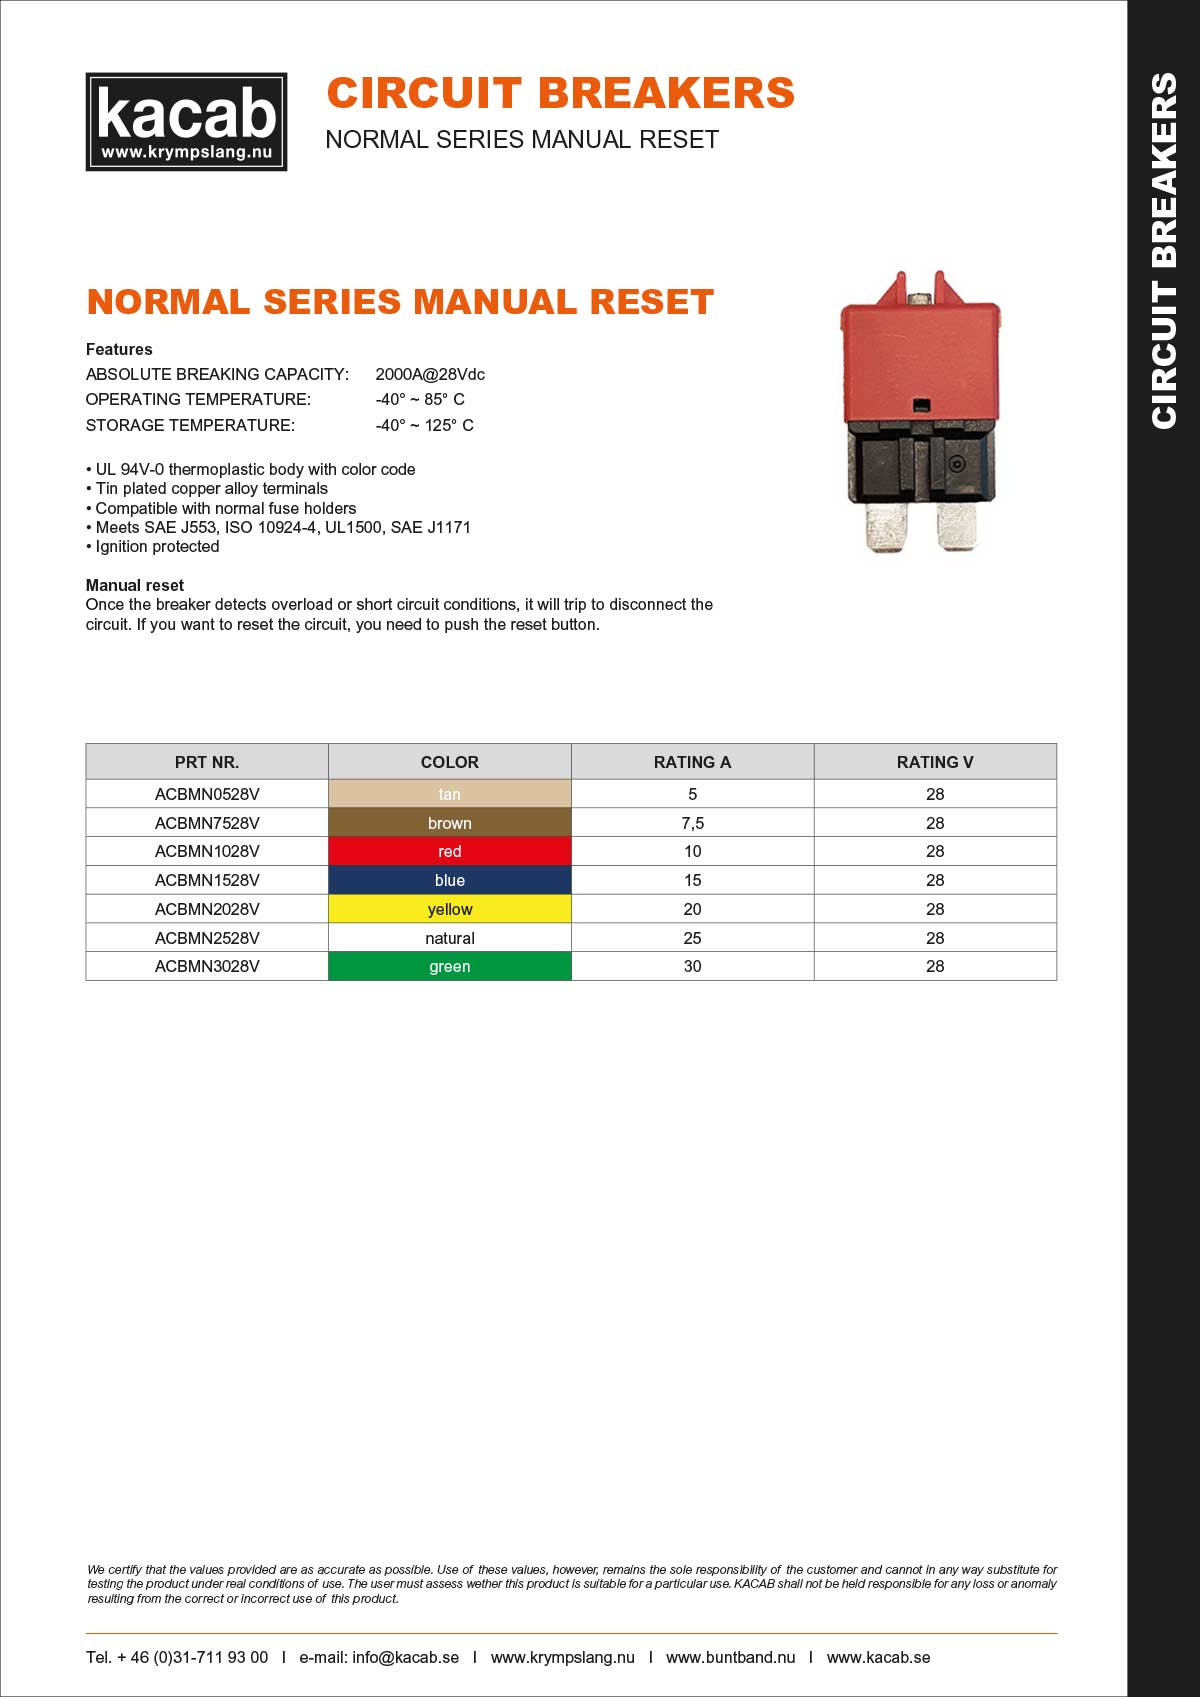 Normal Series Manual Reset